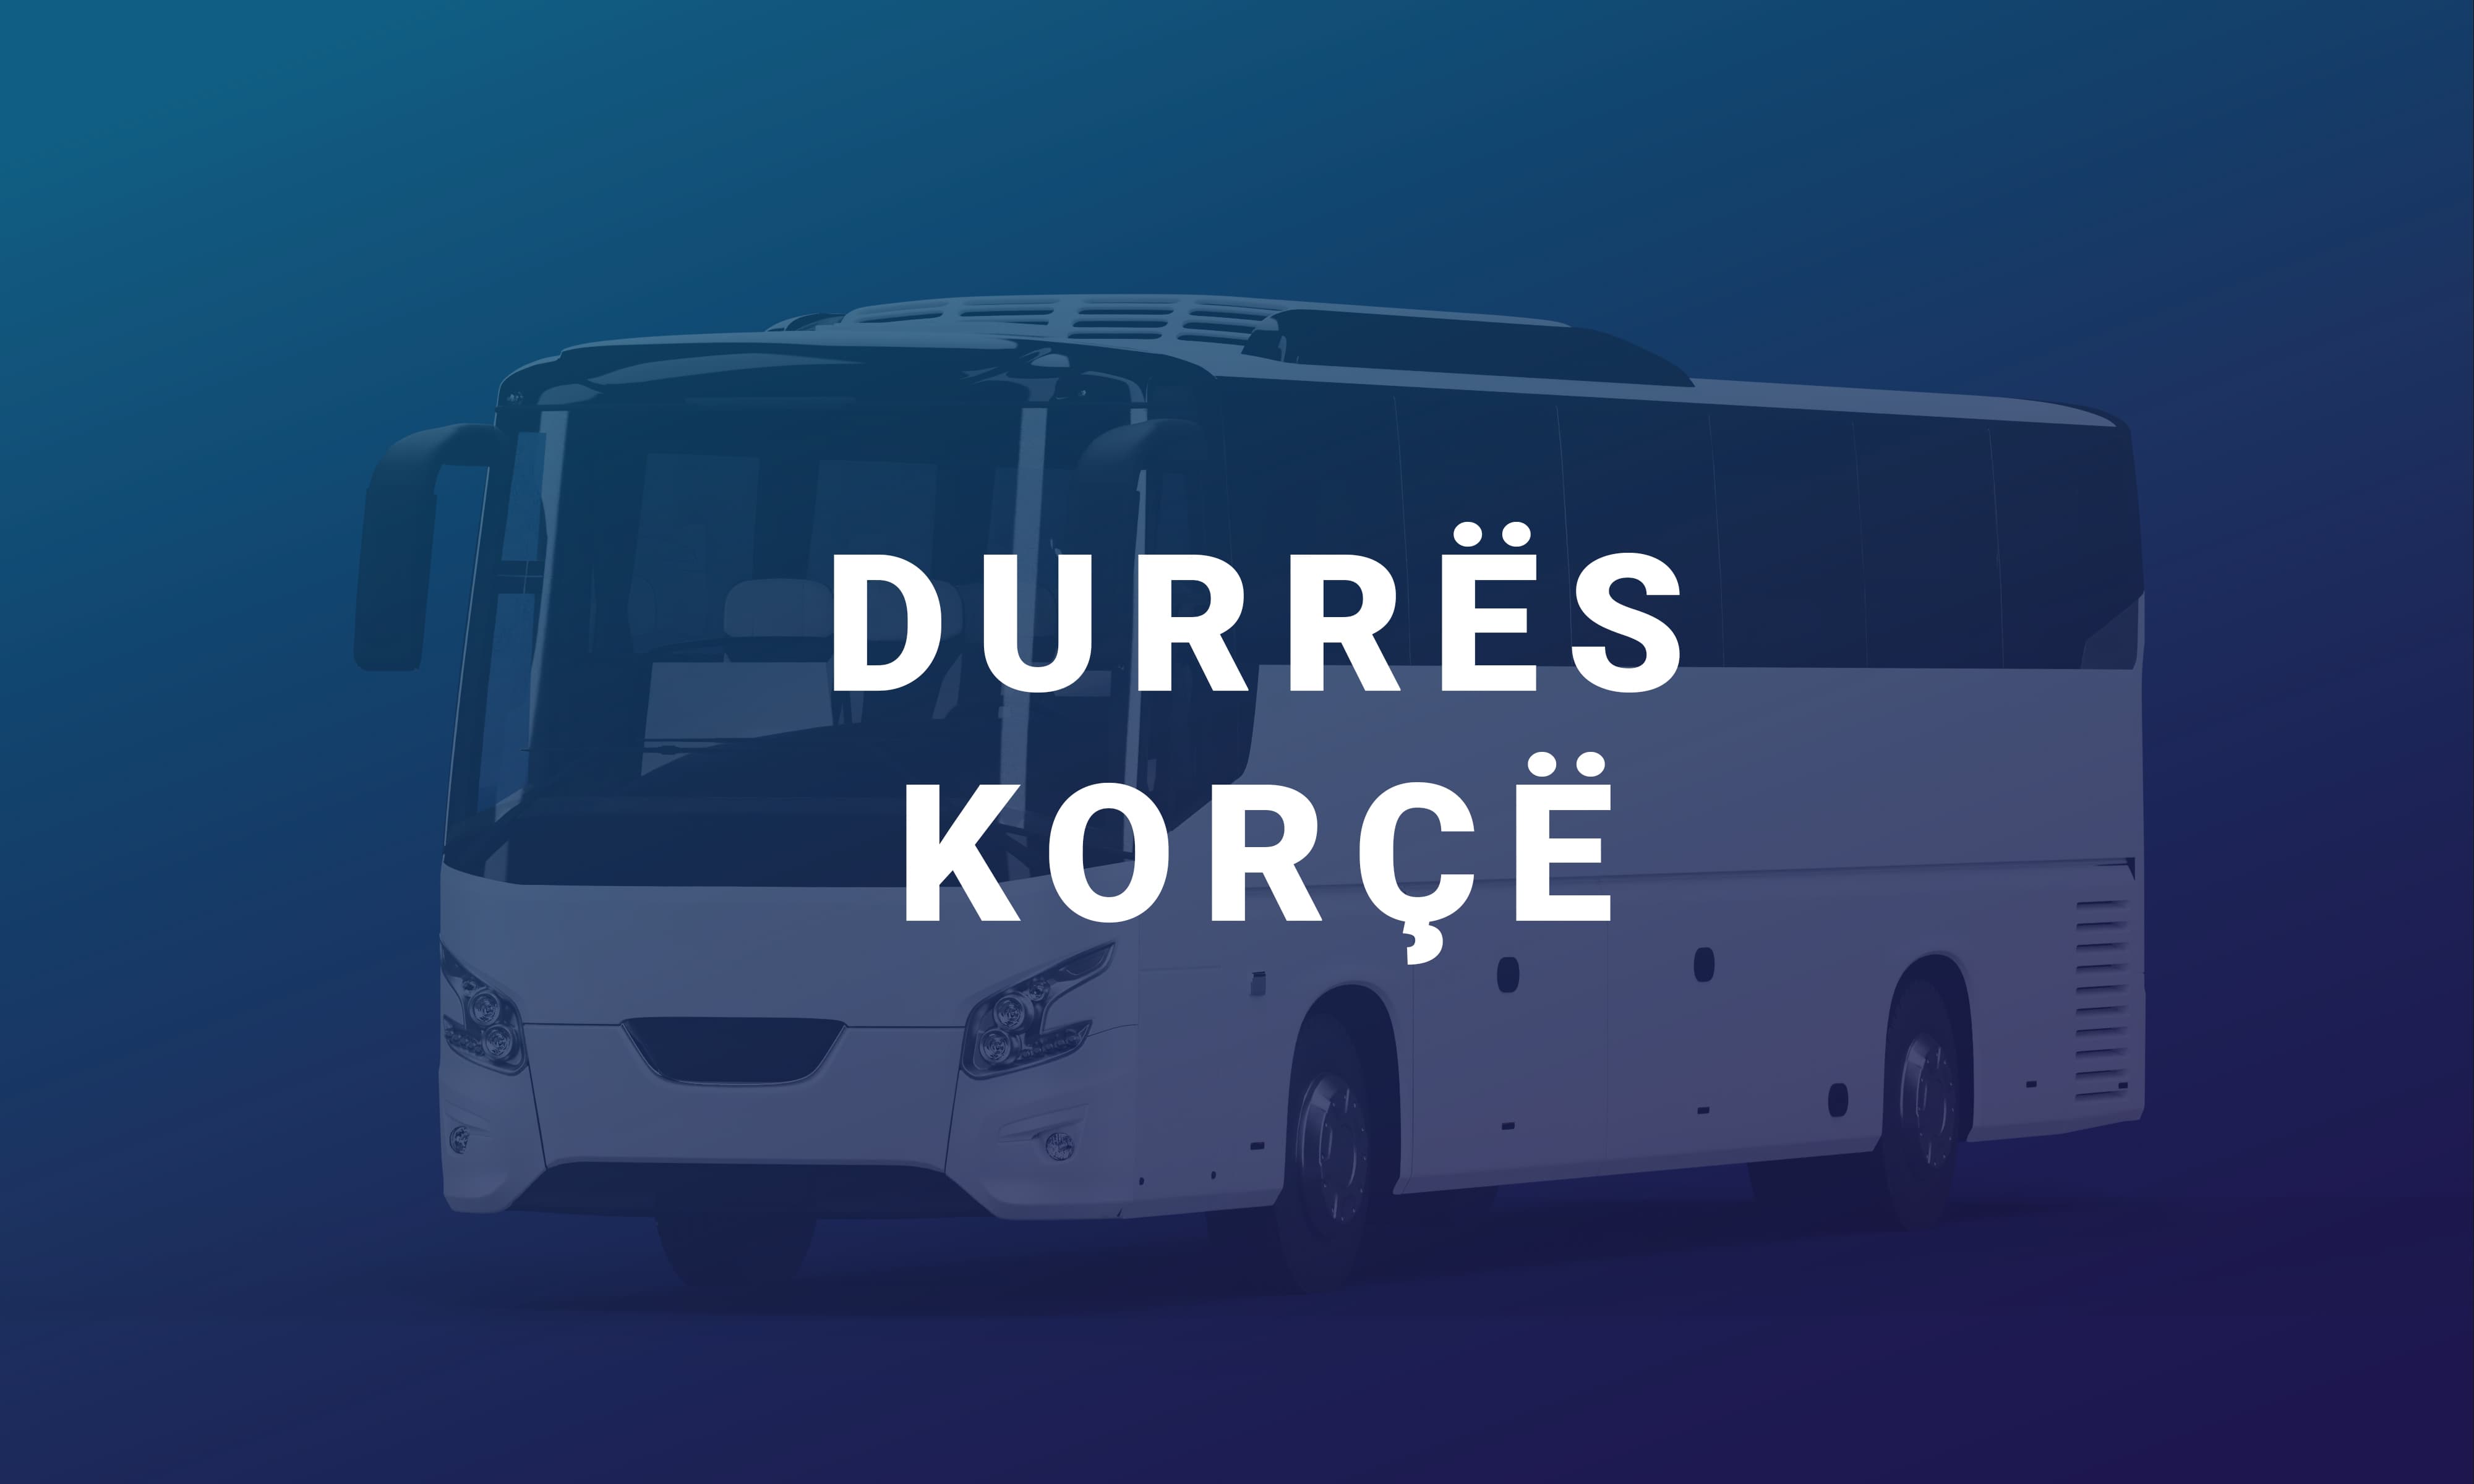 Durrës-Korçë